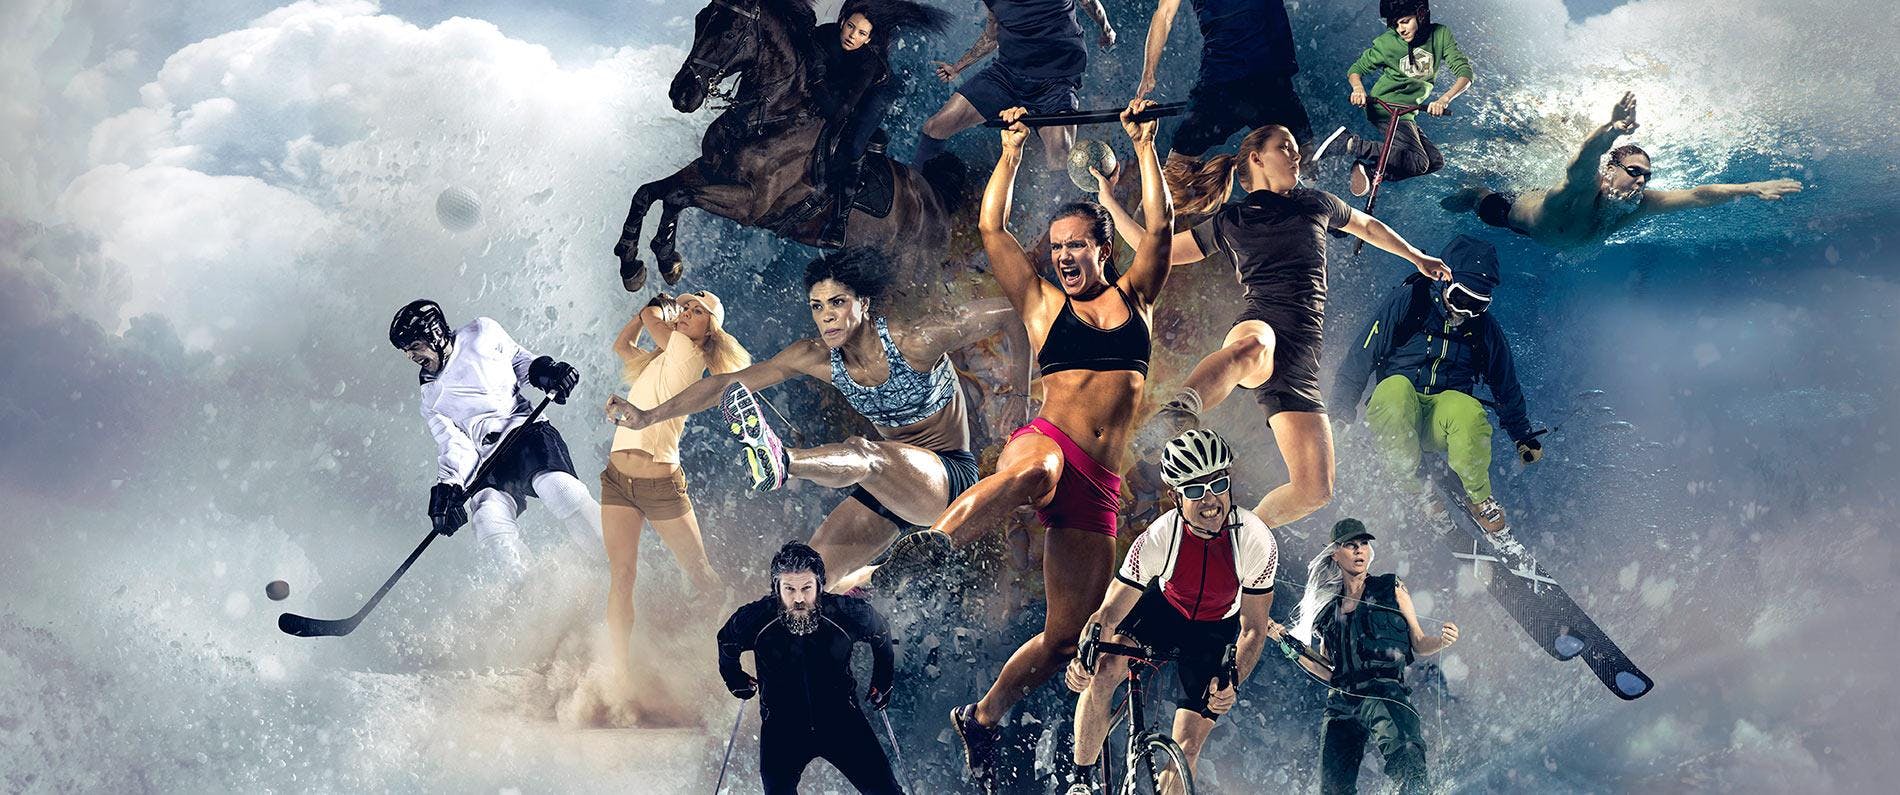 Koostekuva jossa useita eri urheilulajien harrastajia mm. pyöräily, yleisurheilu, jääkiekko, uinti ja laskettelu.